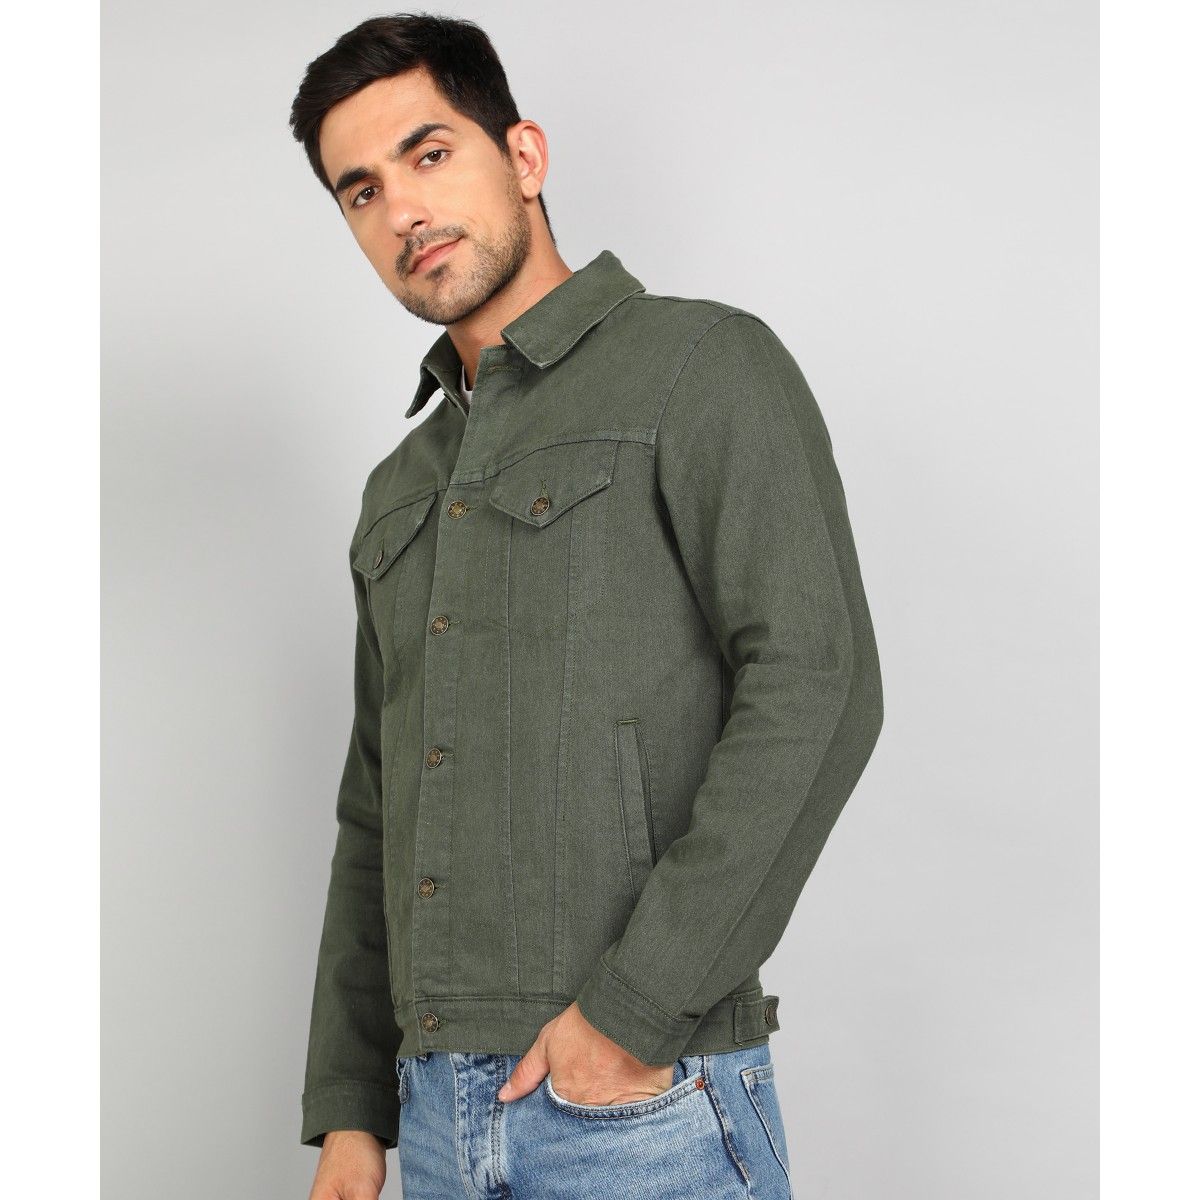 Buy Highlander Light Olive Tailored Jacket for Men Online at Rs.1319 - Ketch